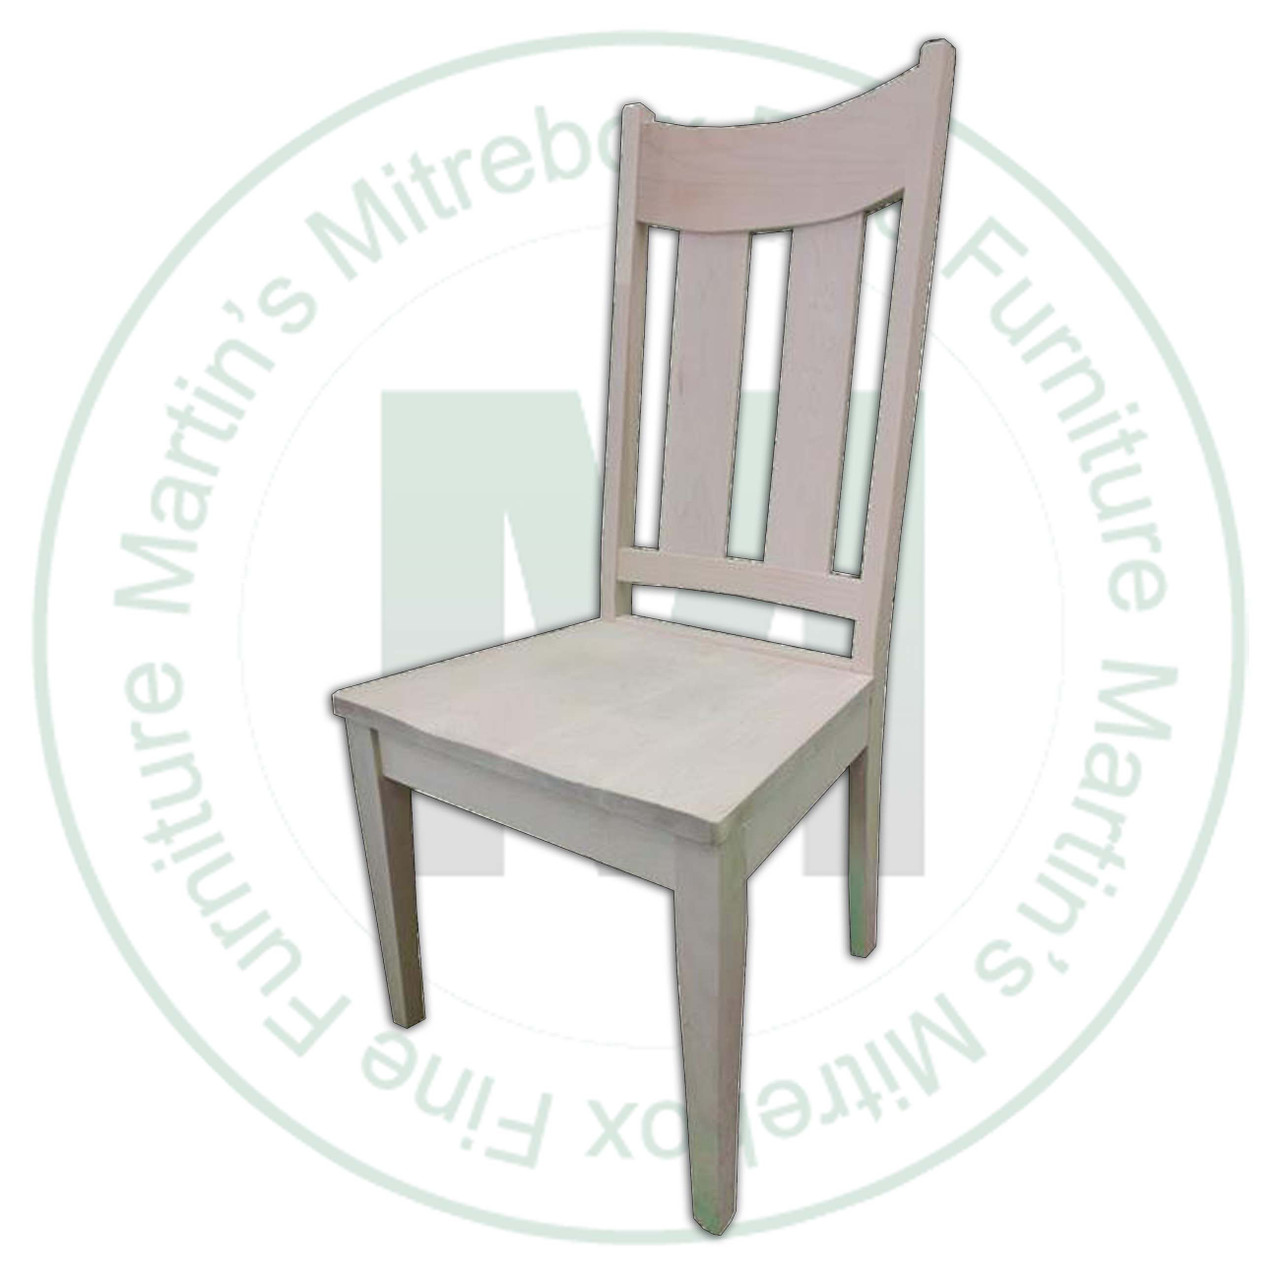 Oak Aspen Side Chair Has Wood Seat